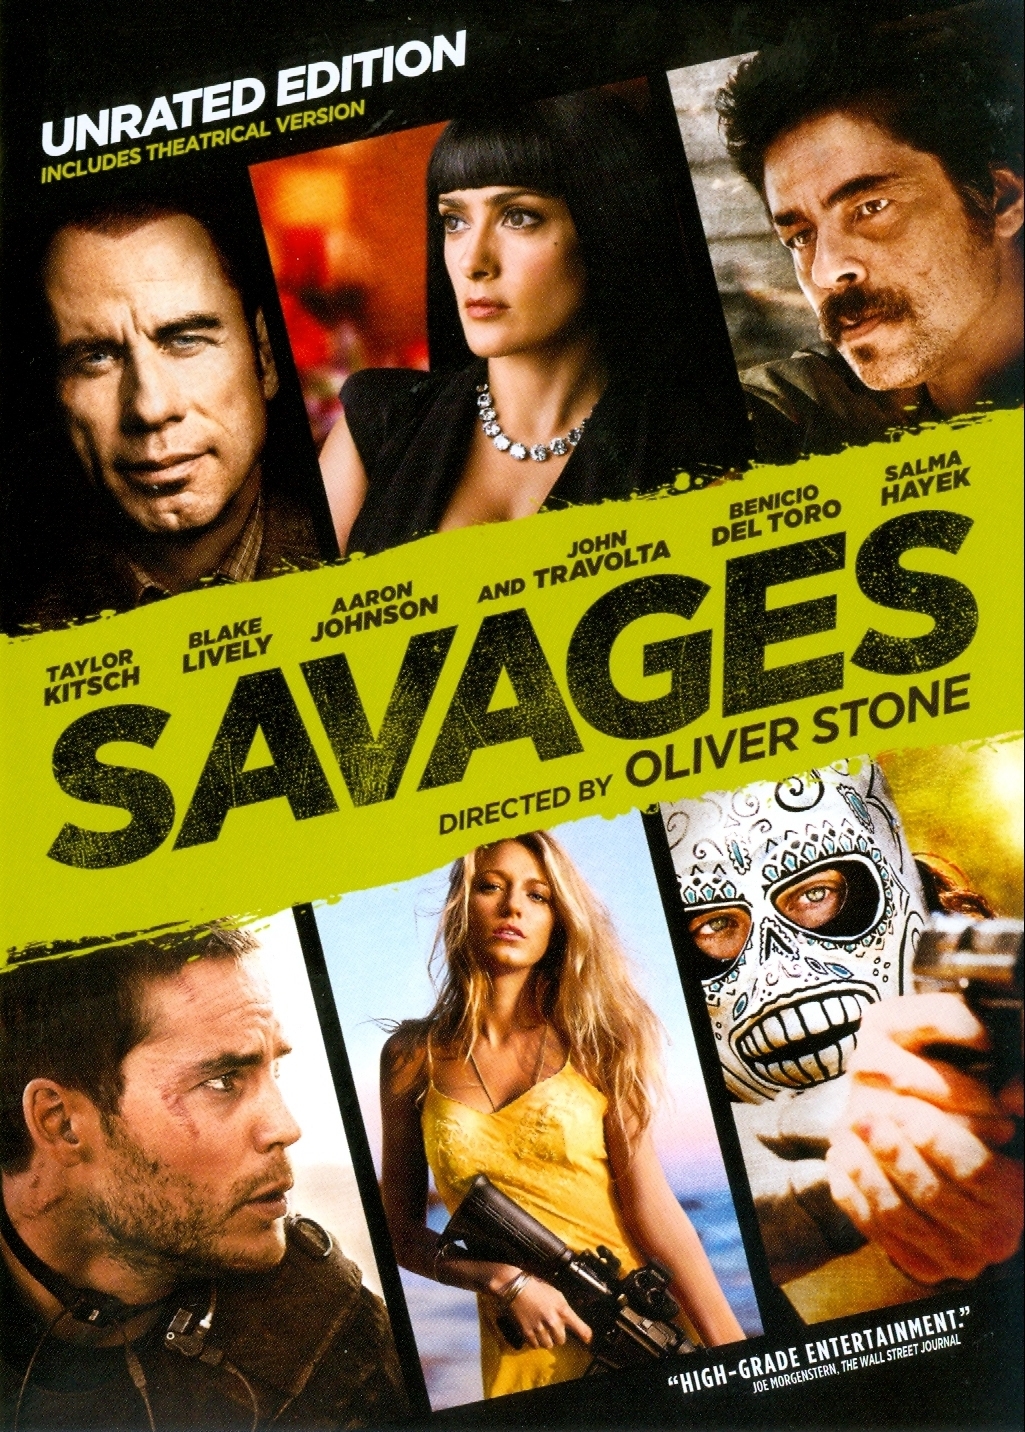 آرون تیلور جانسون در صحنه فیلم سینمایی Savages: The Interrogations به همراه بنیسیو دل تورو، Taylor Kitsch، بلیک لیولی، جان تراولتا و Salma Hayek